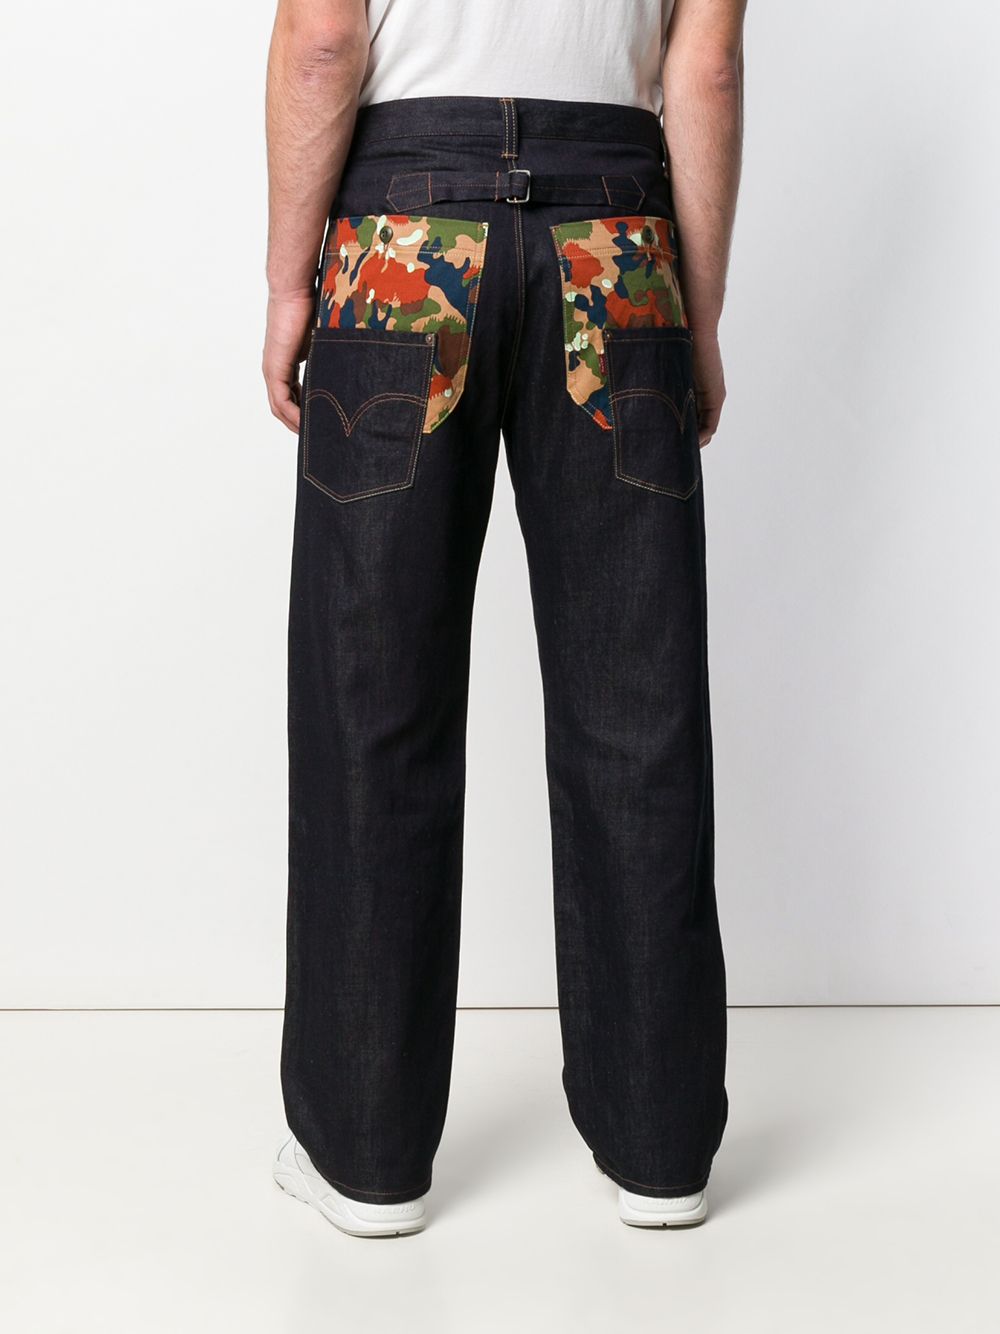 фото Junya watanabe man x levi's джинсы в стиле оверсайз с камуфляжным принтом на карманах